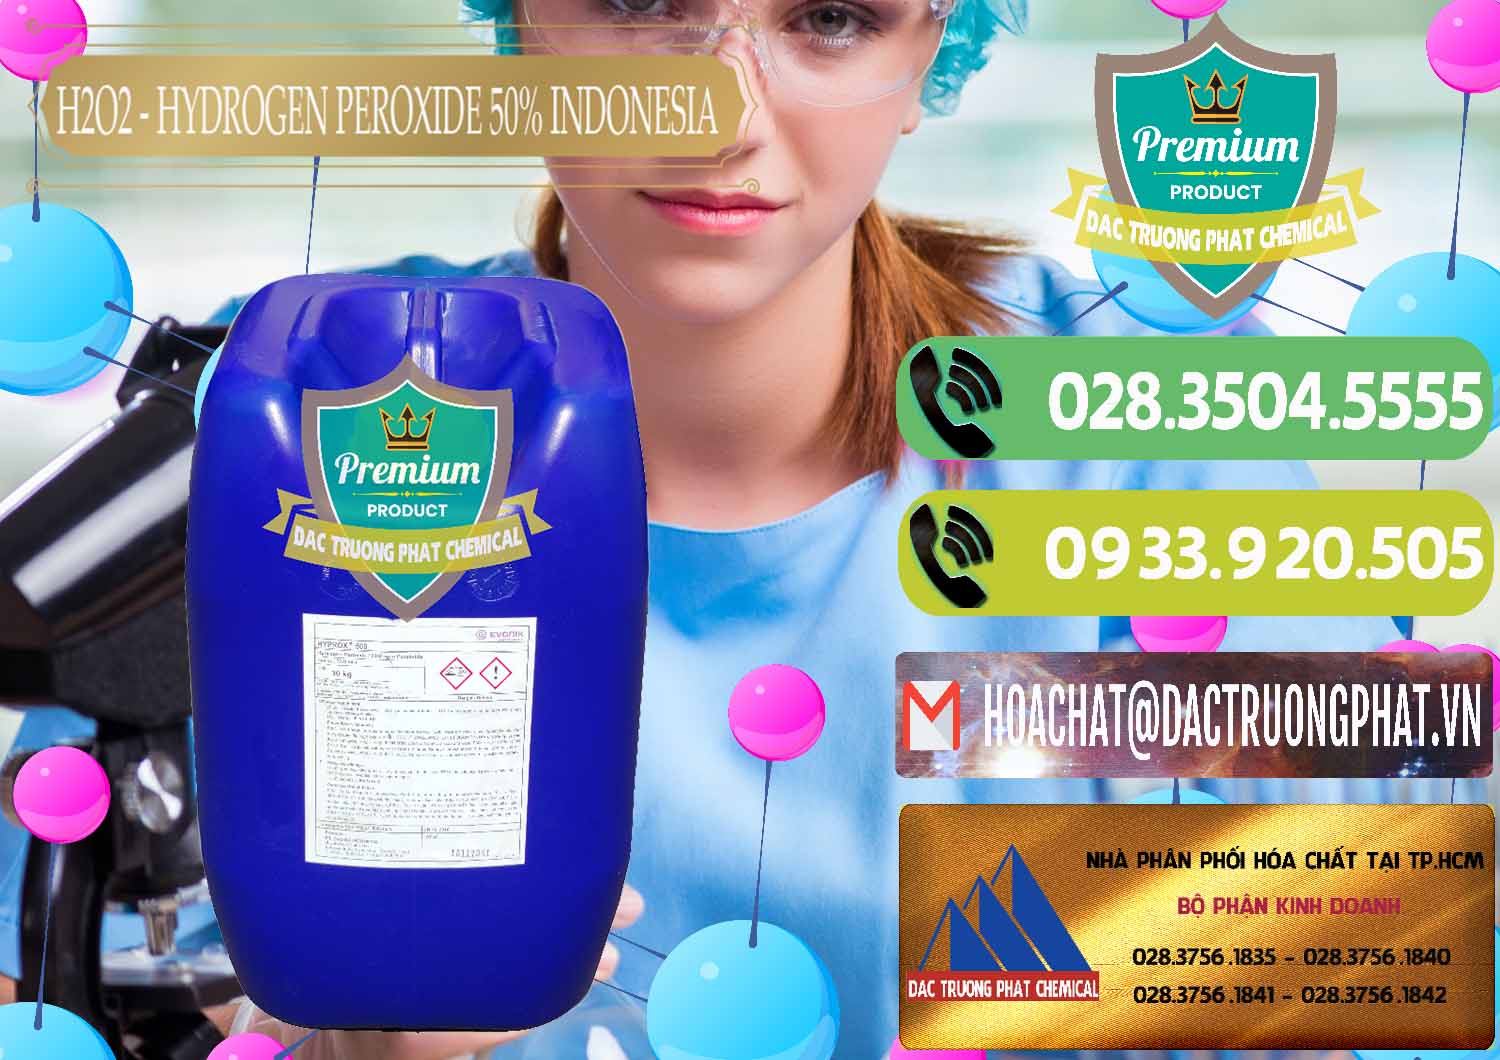 Nơi chuyên bán _ phân phối H2O2 - Hydrogen Peroxide 50% Evonik Indonesia - 0070 - Công ty phân phối và nhập khẩu hóa chất tại TP.HCM - hoachatmientay.vn